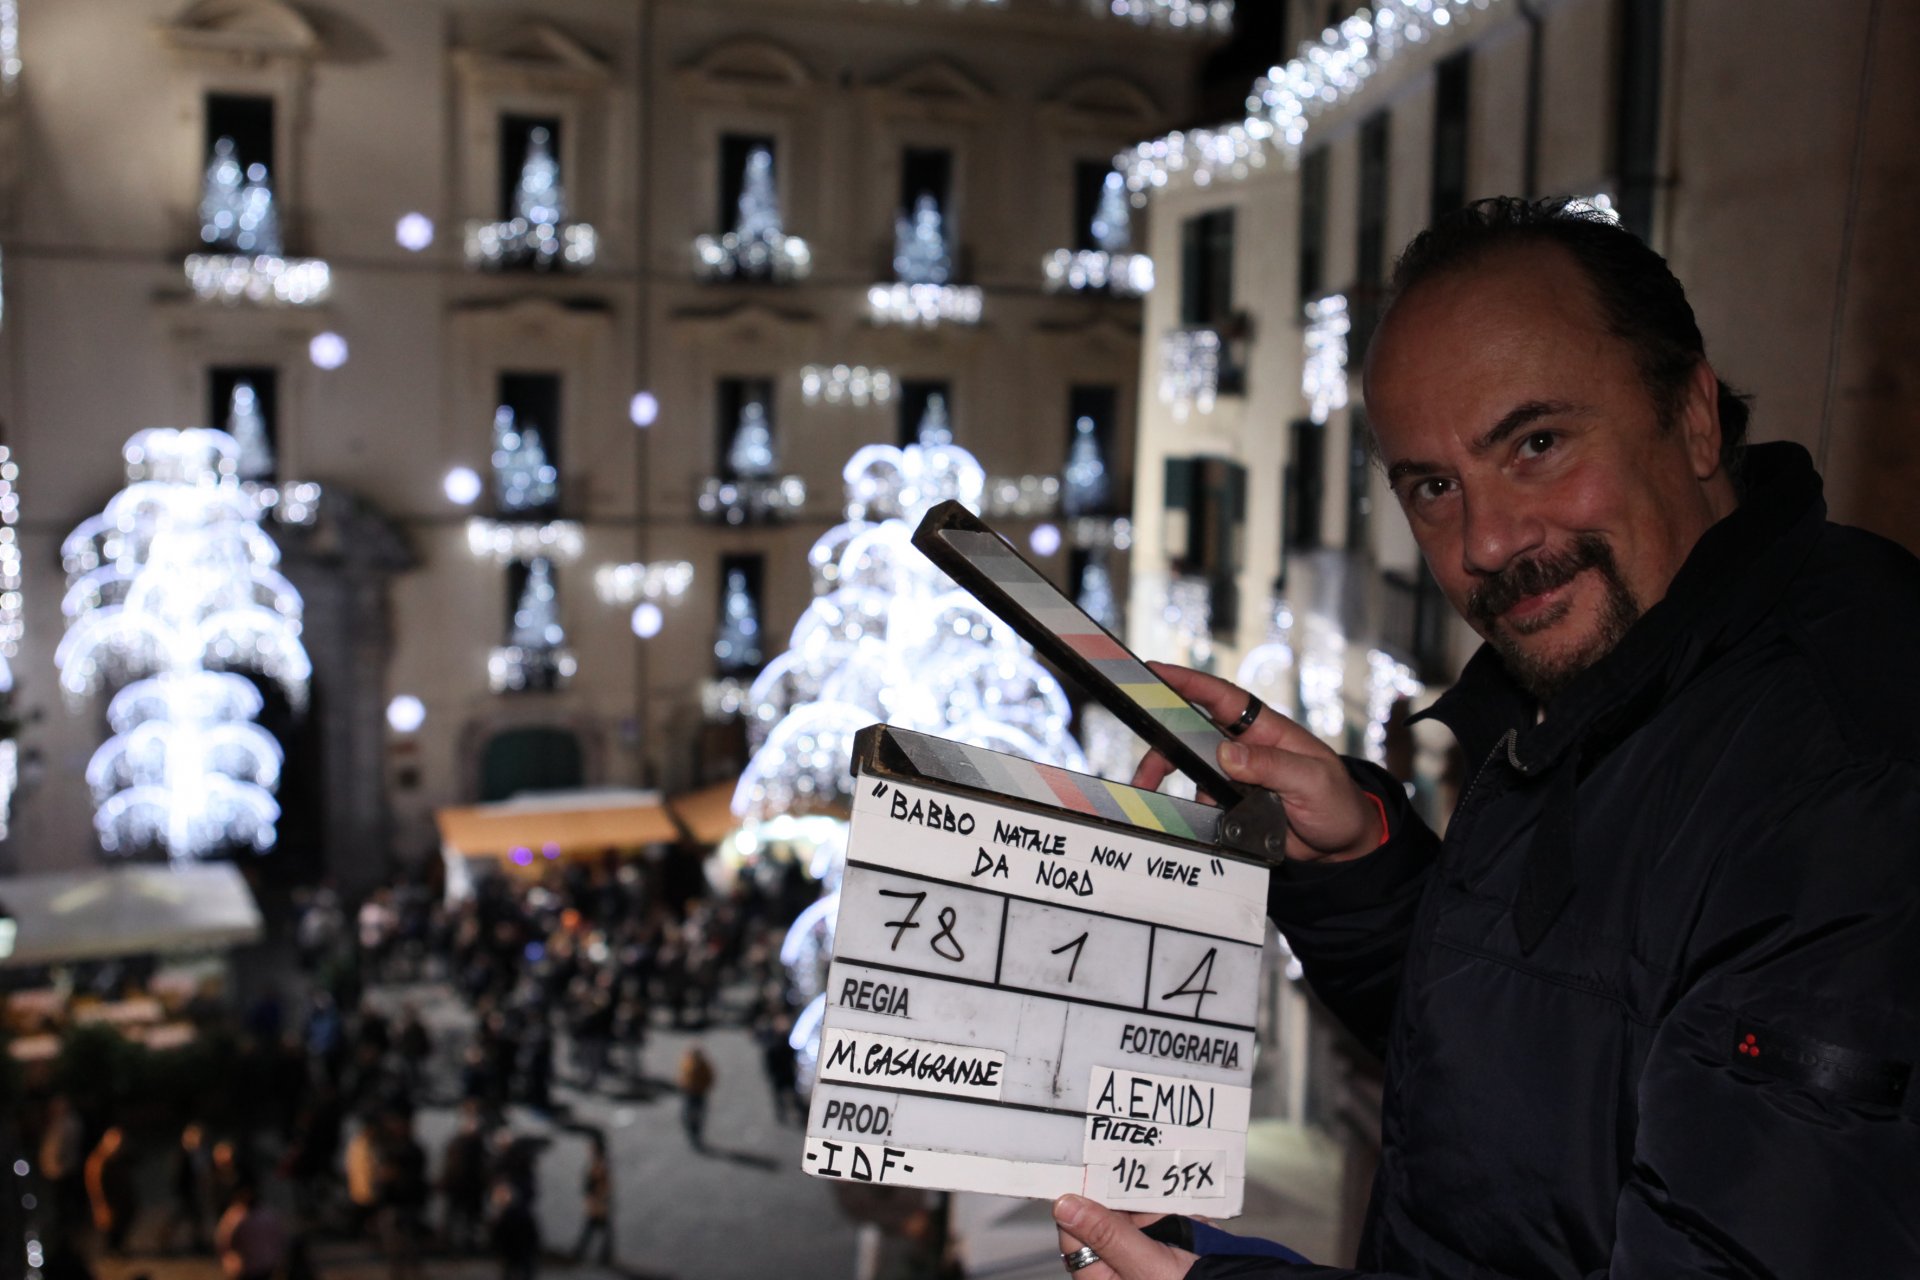 Babbo Natale Non Viene Da Nord Trailer.Babbo Natale Non Viene Da Nord 2015 Films Released 2000 2019 Films Docu Filmitalia